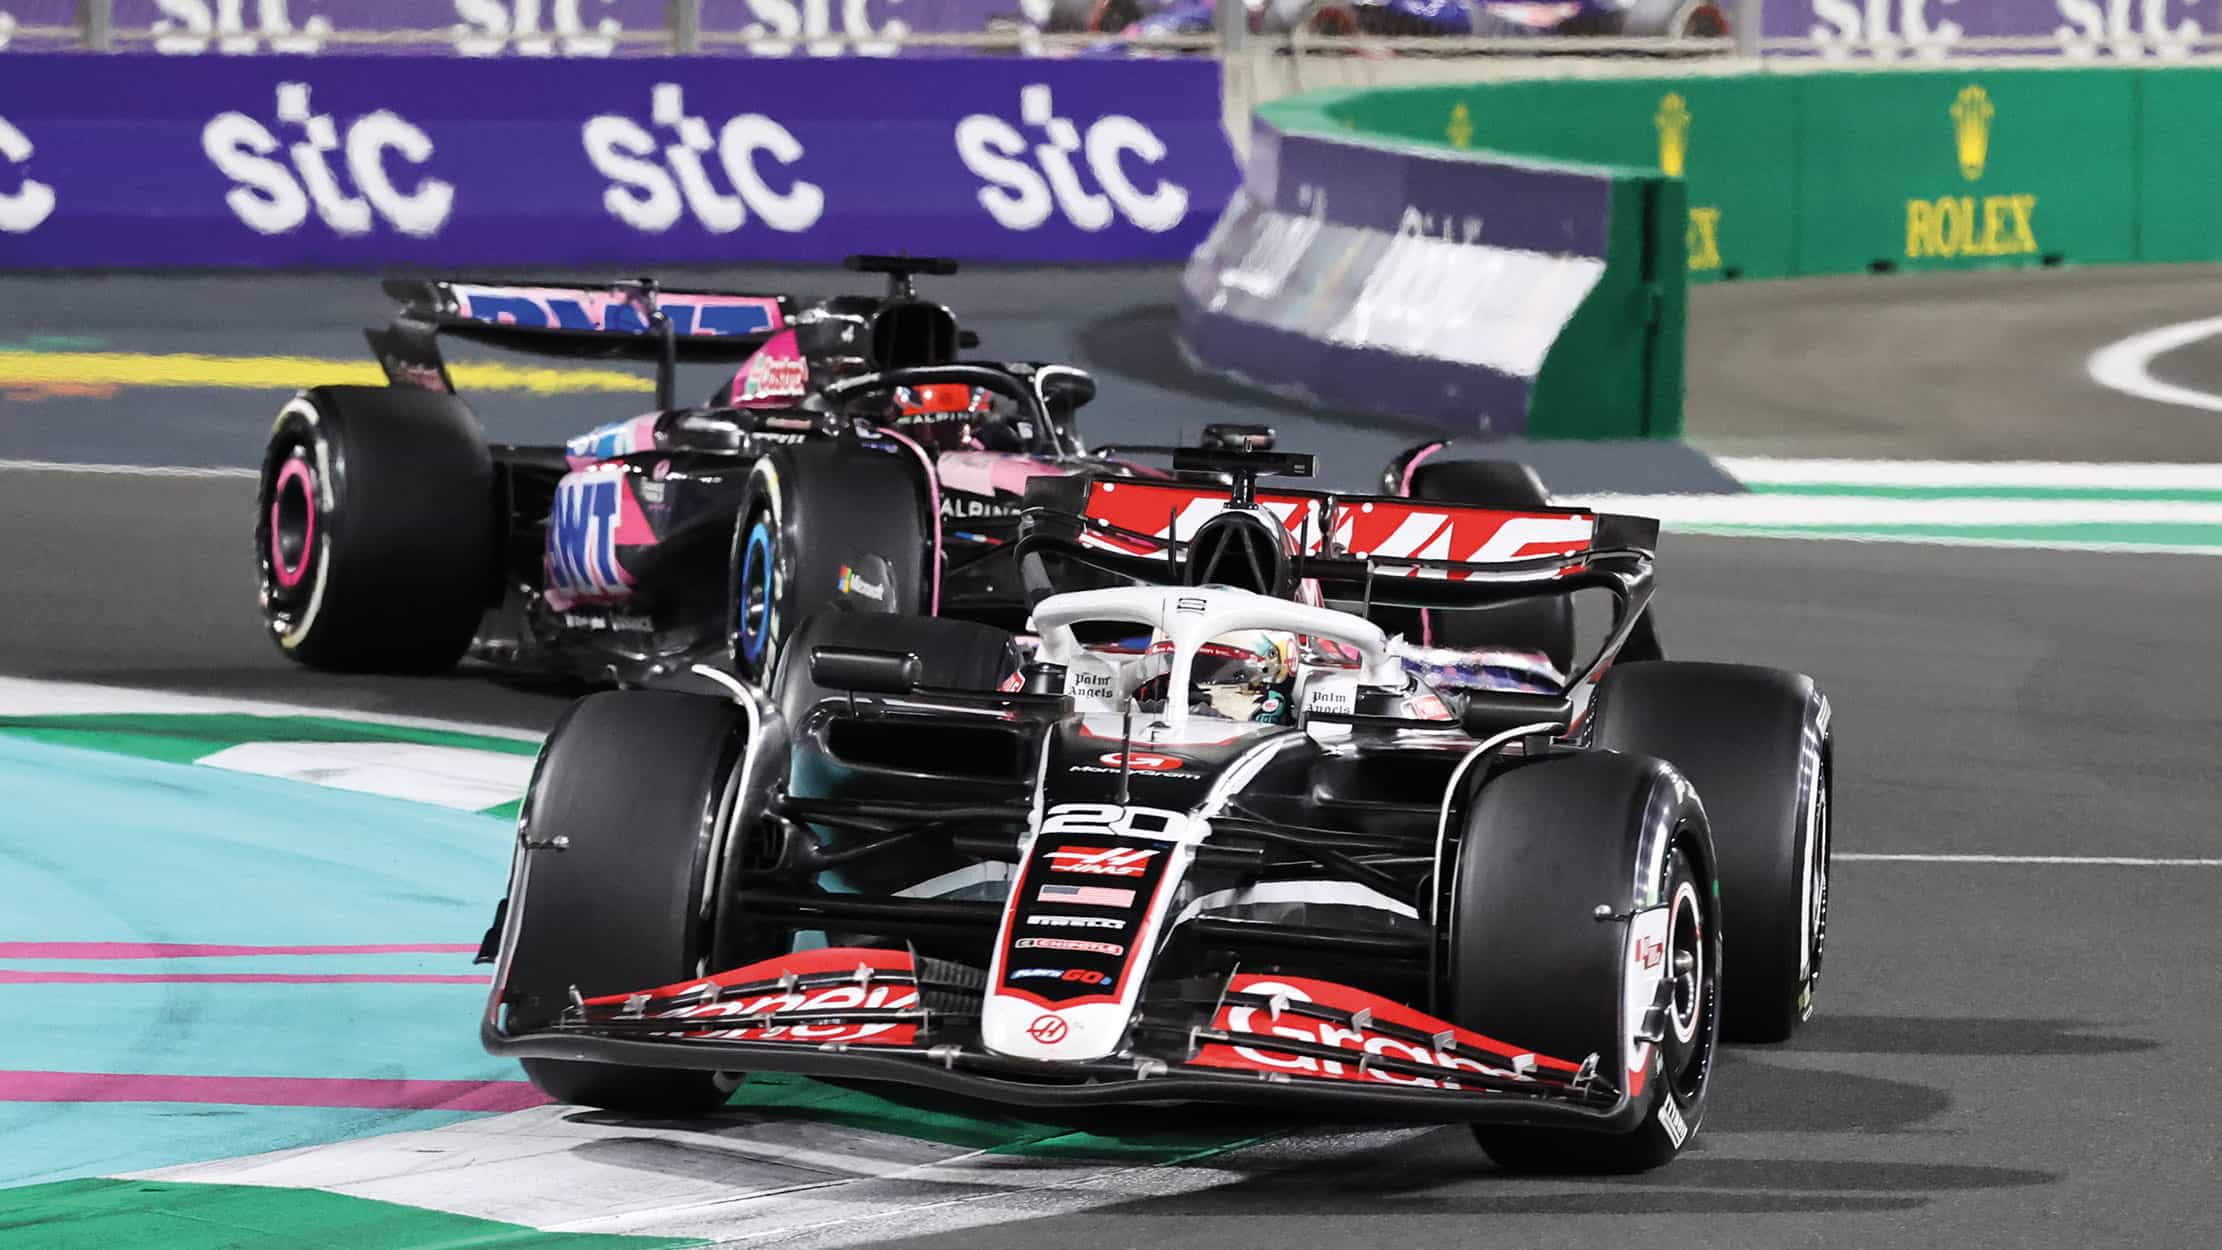 Magnussen in the Haas in Saudi